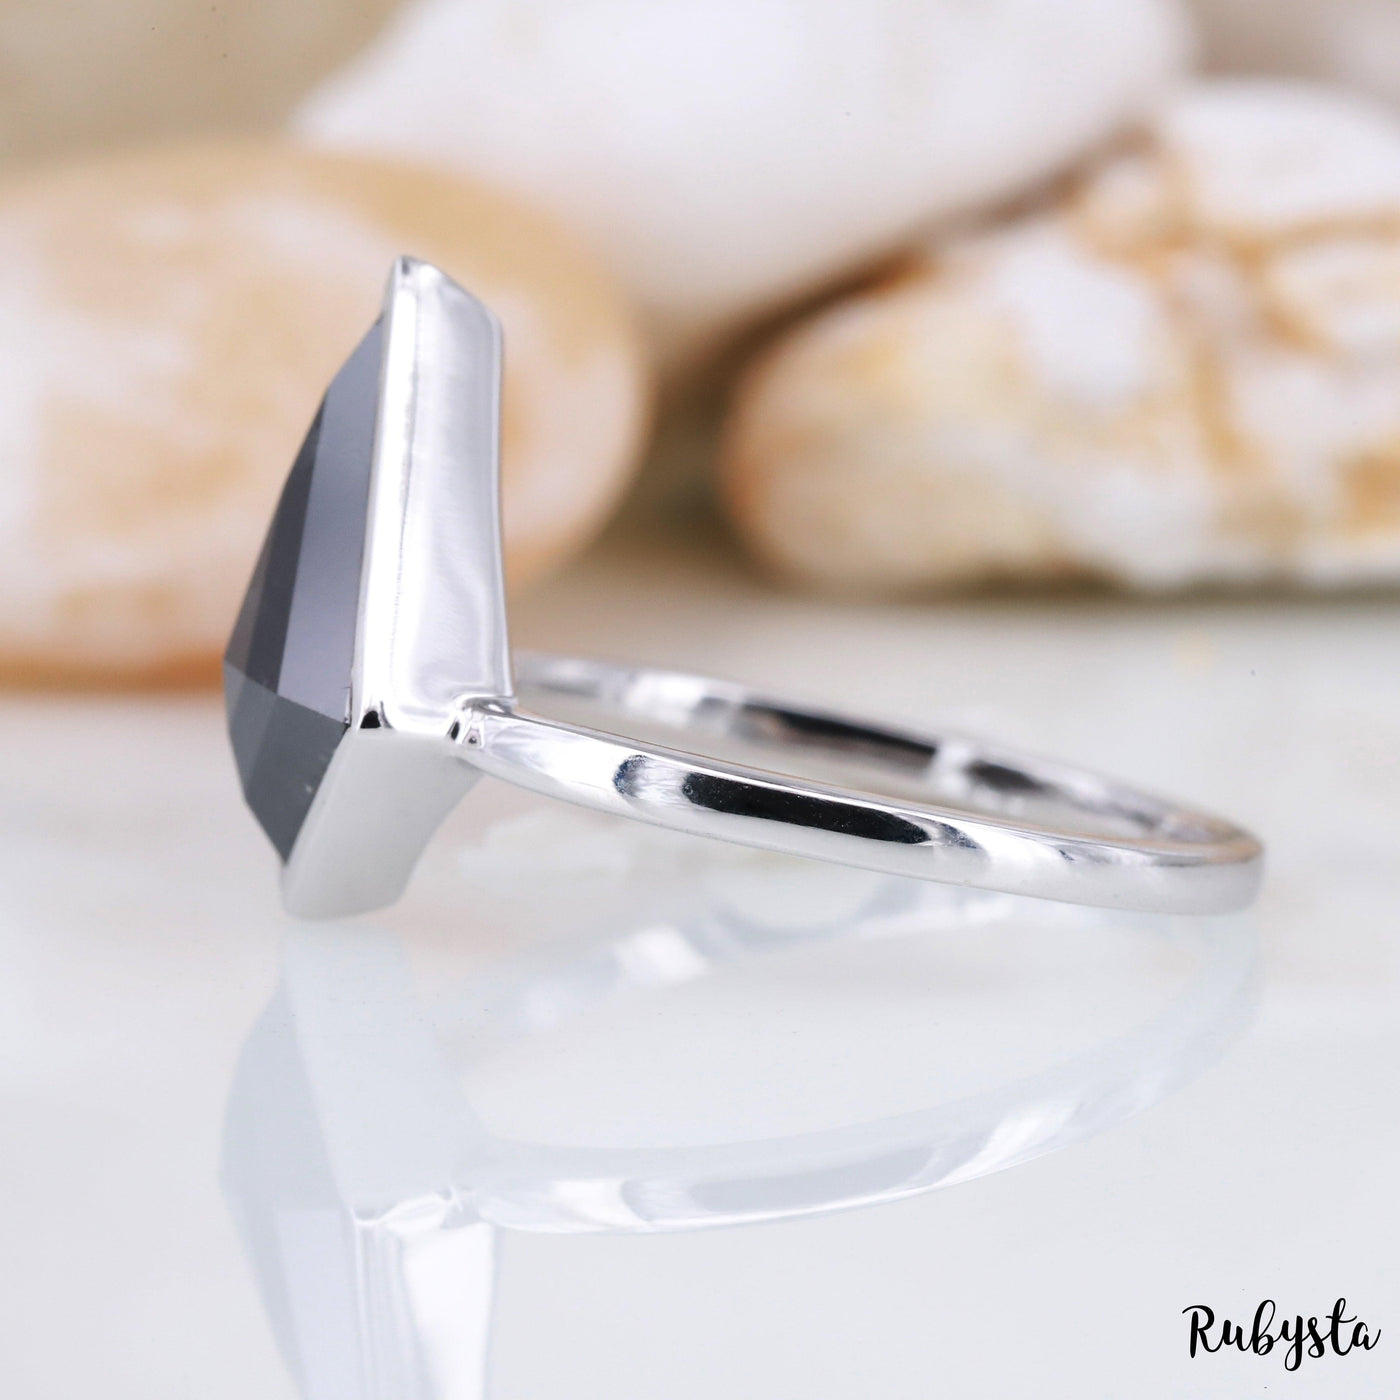 Salt and Pepper Diamond Ring | Engagement Ring | Kite Diamond Ring